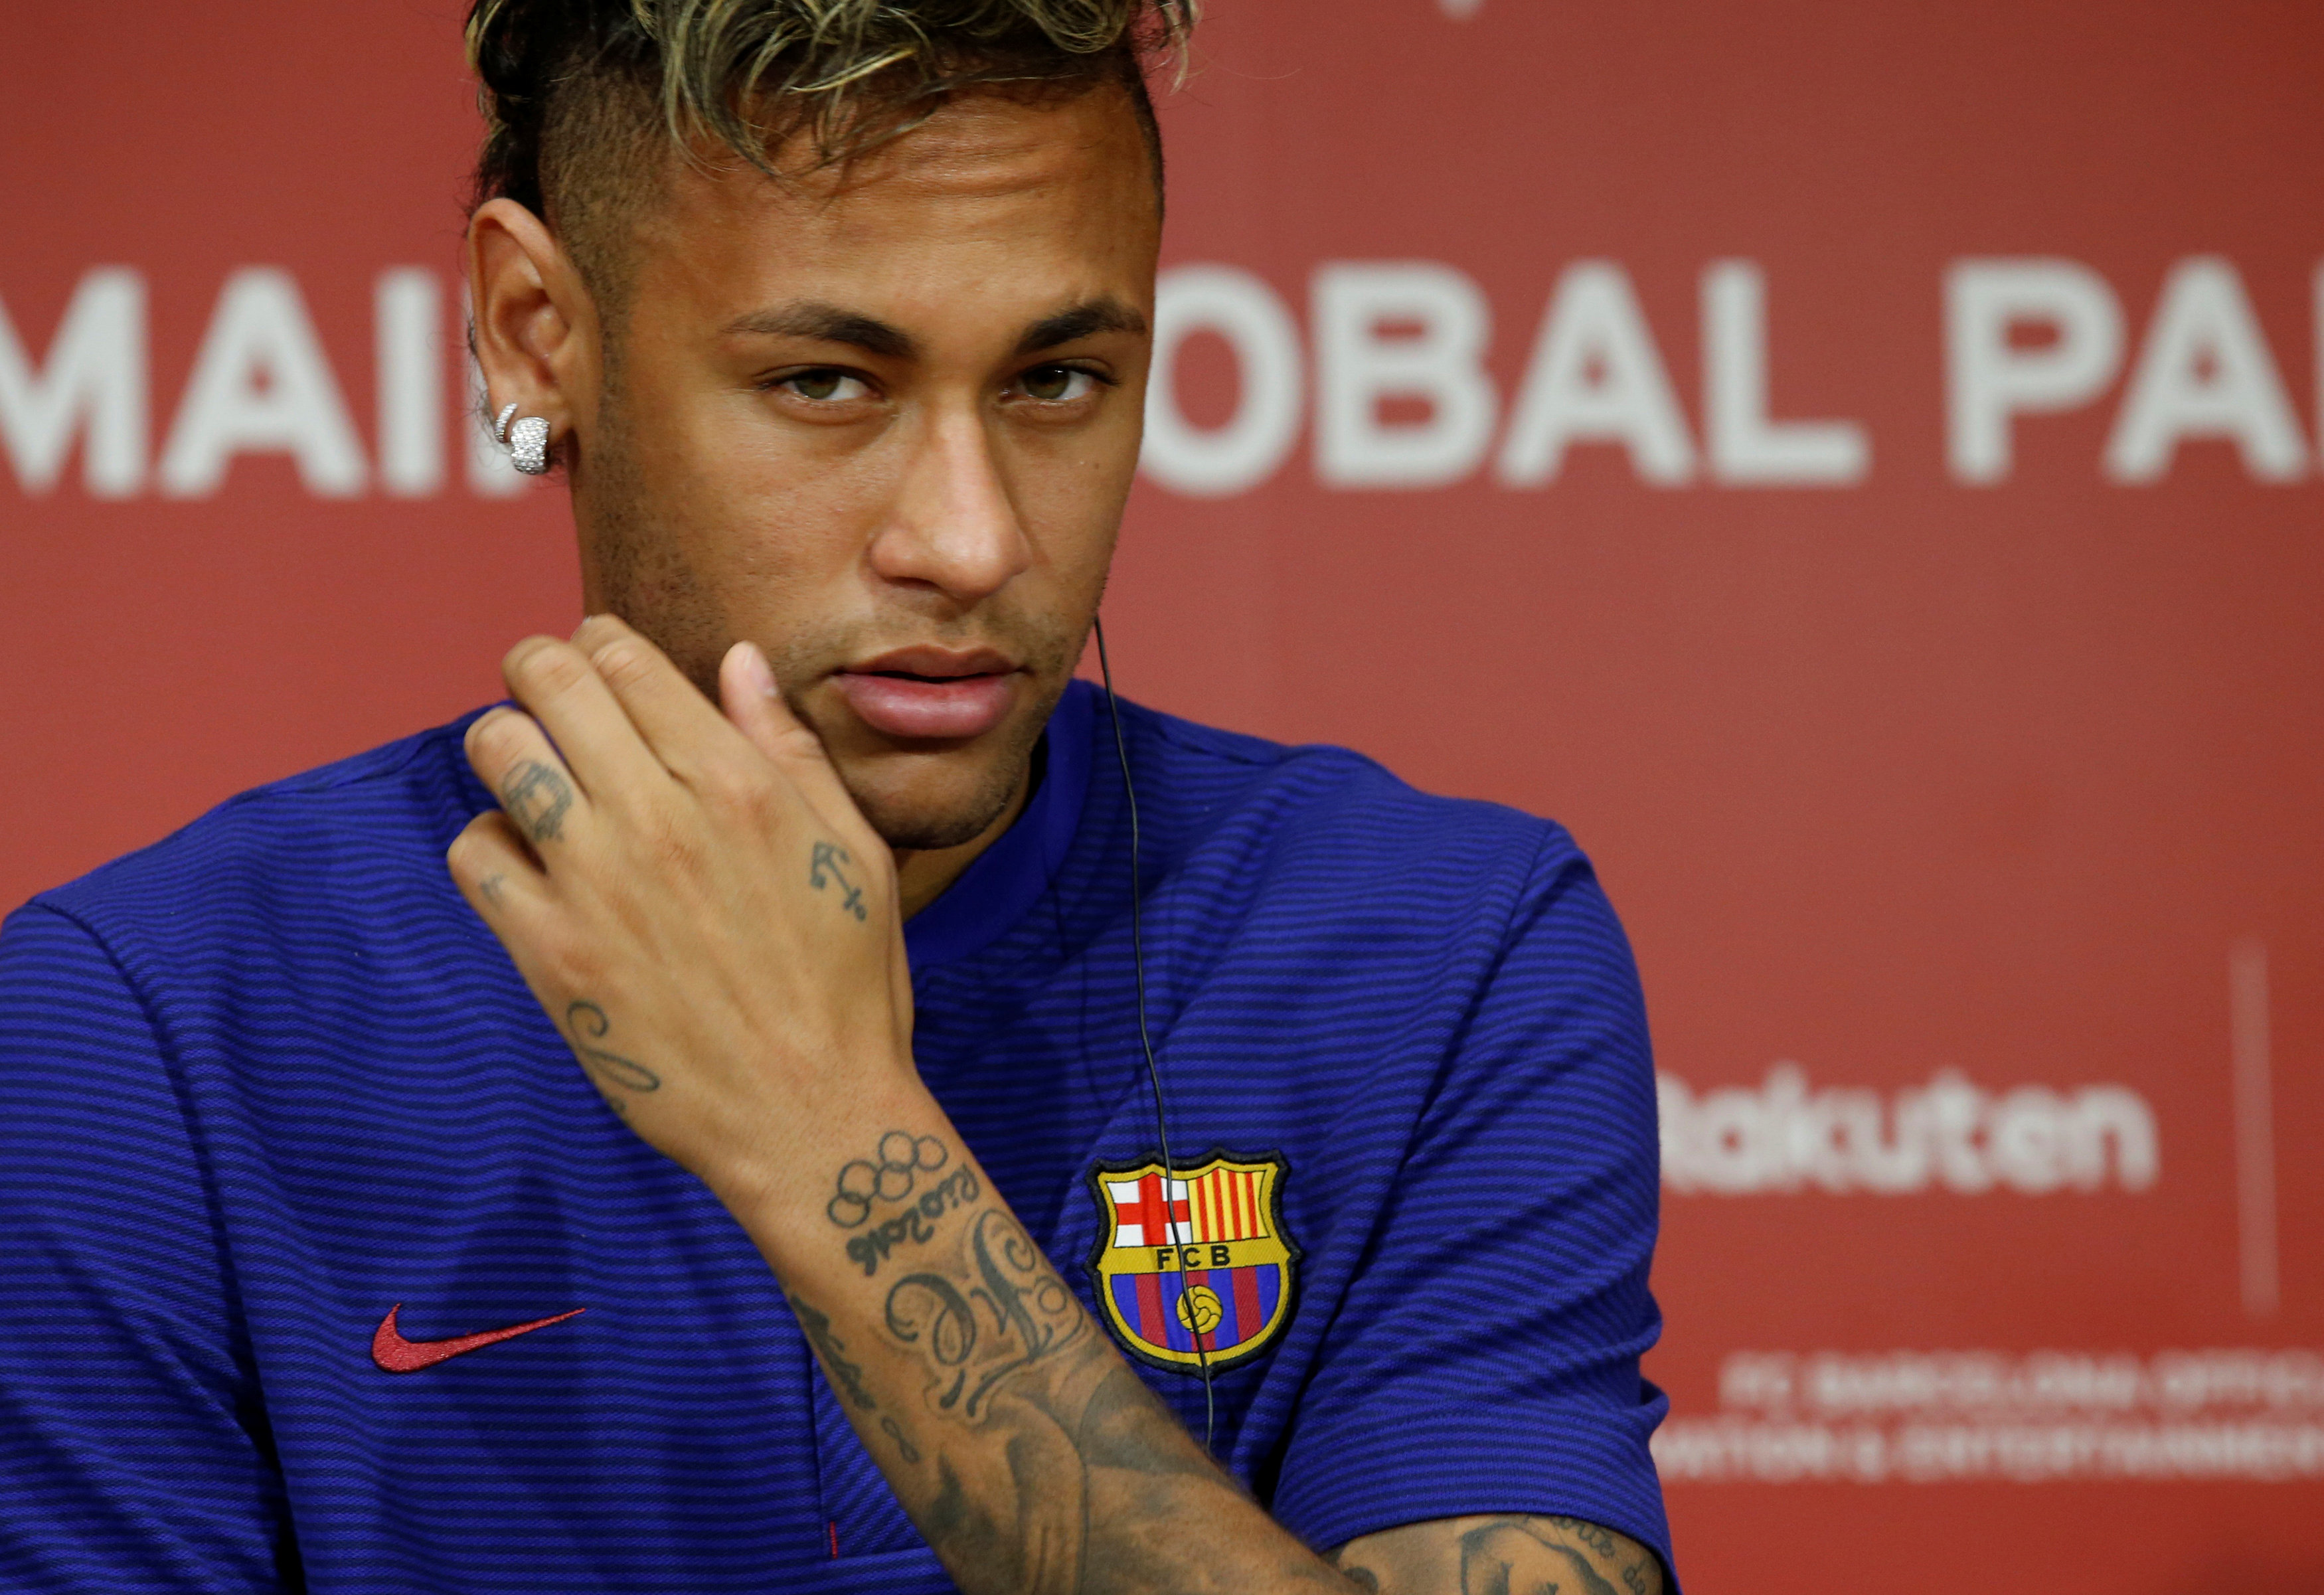 Neymar con 222 millones de euros sería el fichaje más caro de la historia